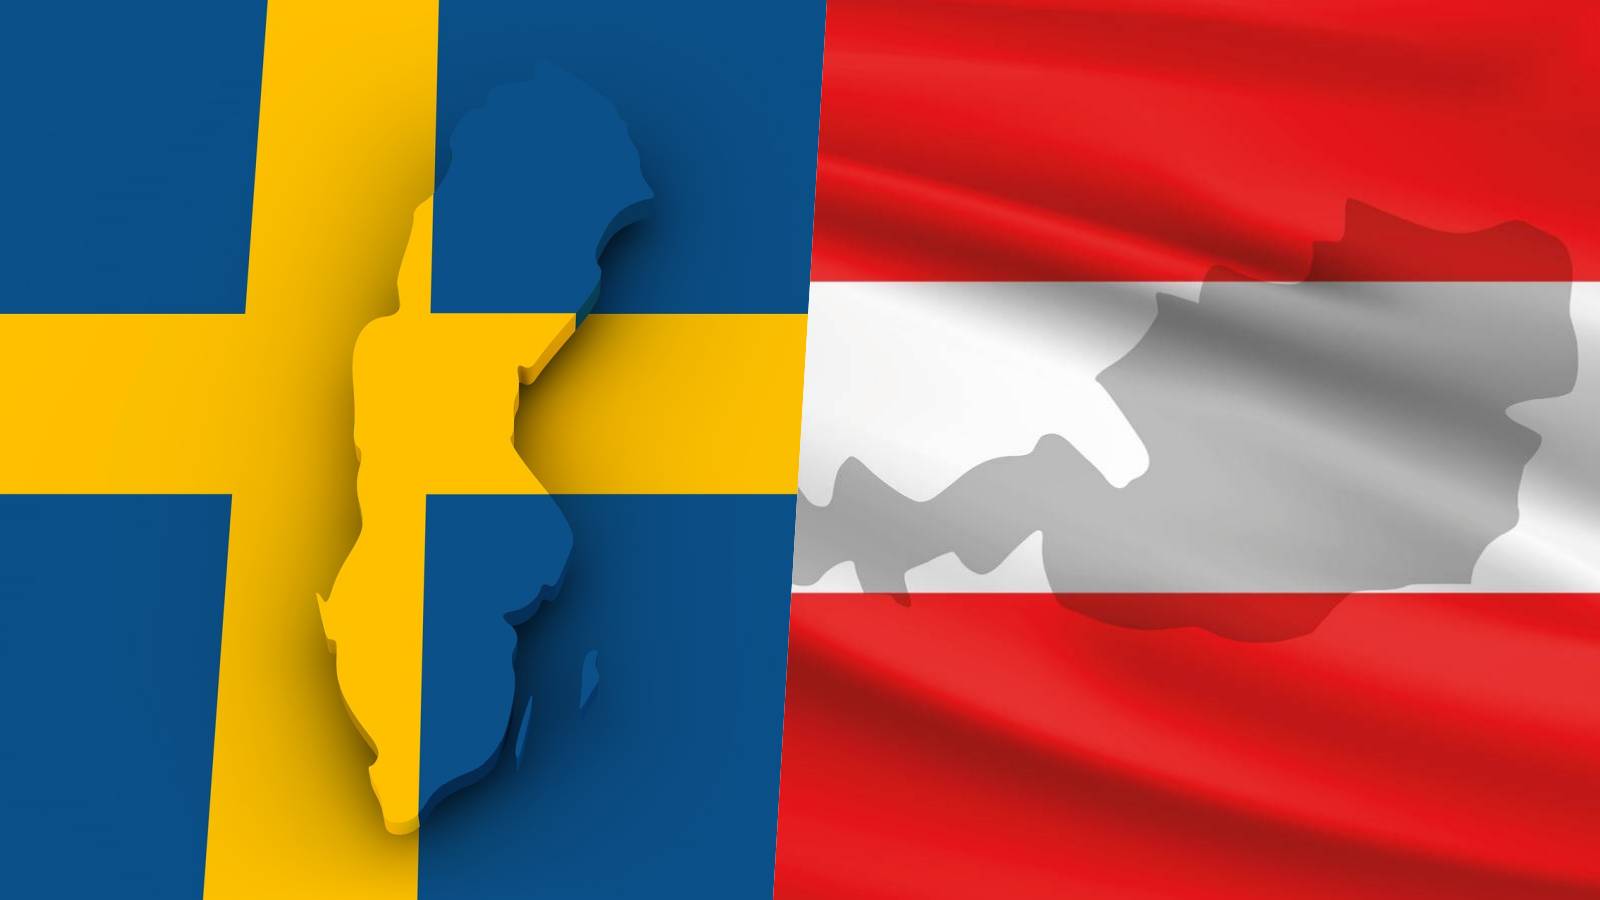 L'Austria ha aiutato l'Italia e la Svezia: annuncio dell'ultimo minuto che impedisce l'adesione della Romania a Schengen